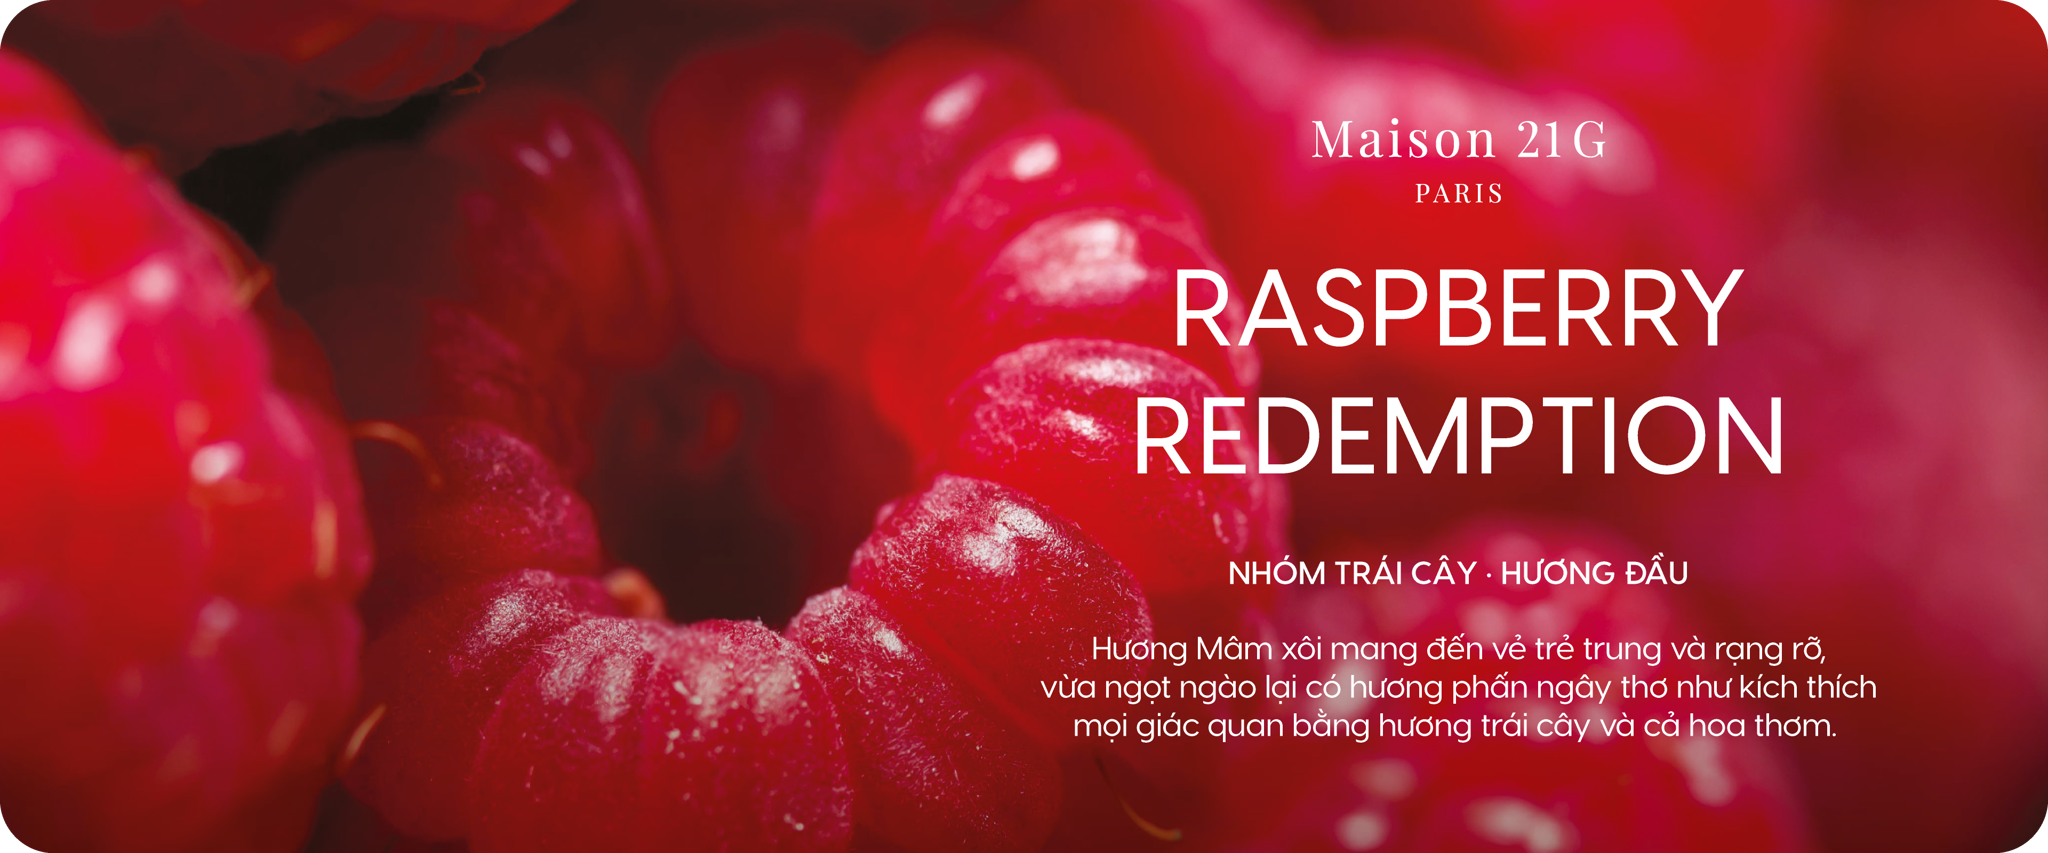 Raspberry Redemption - Quả mâm xôi